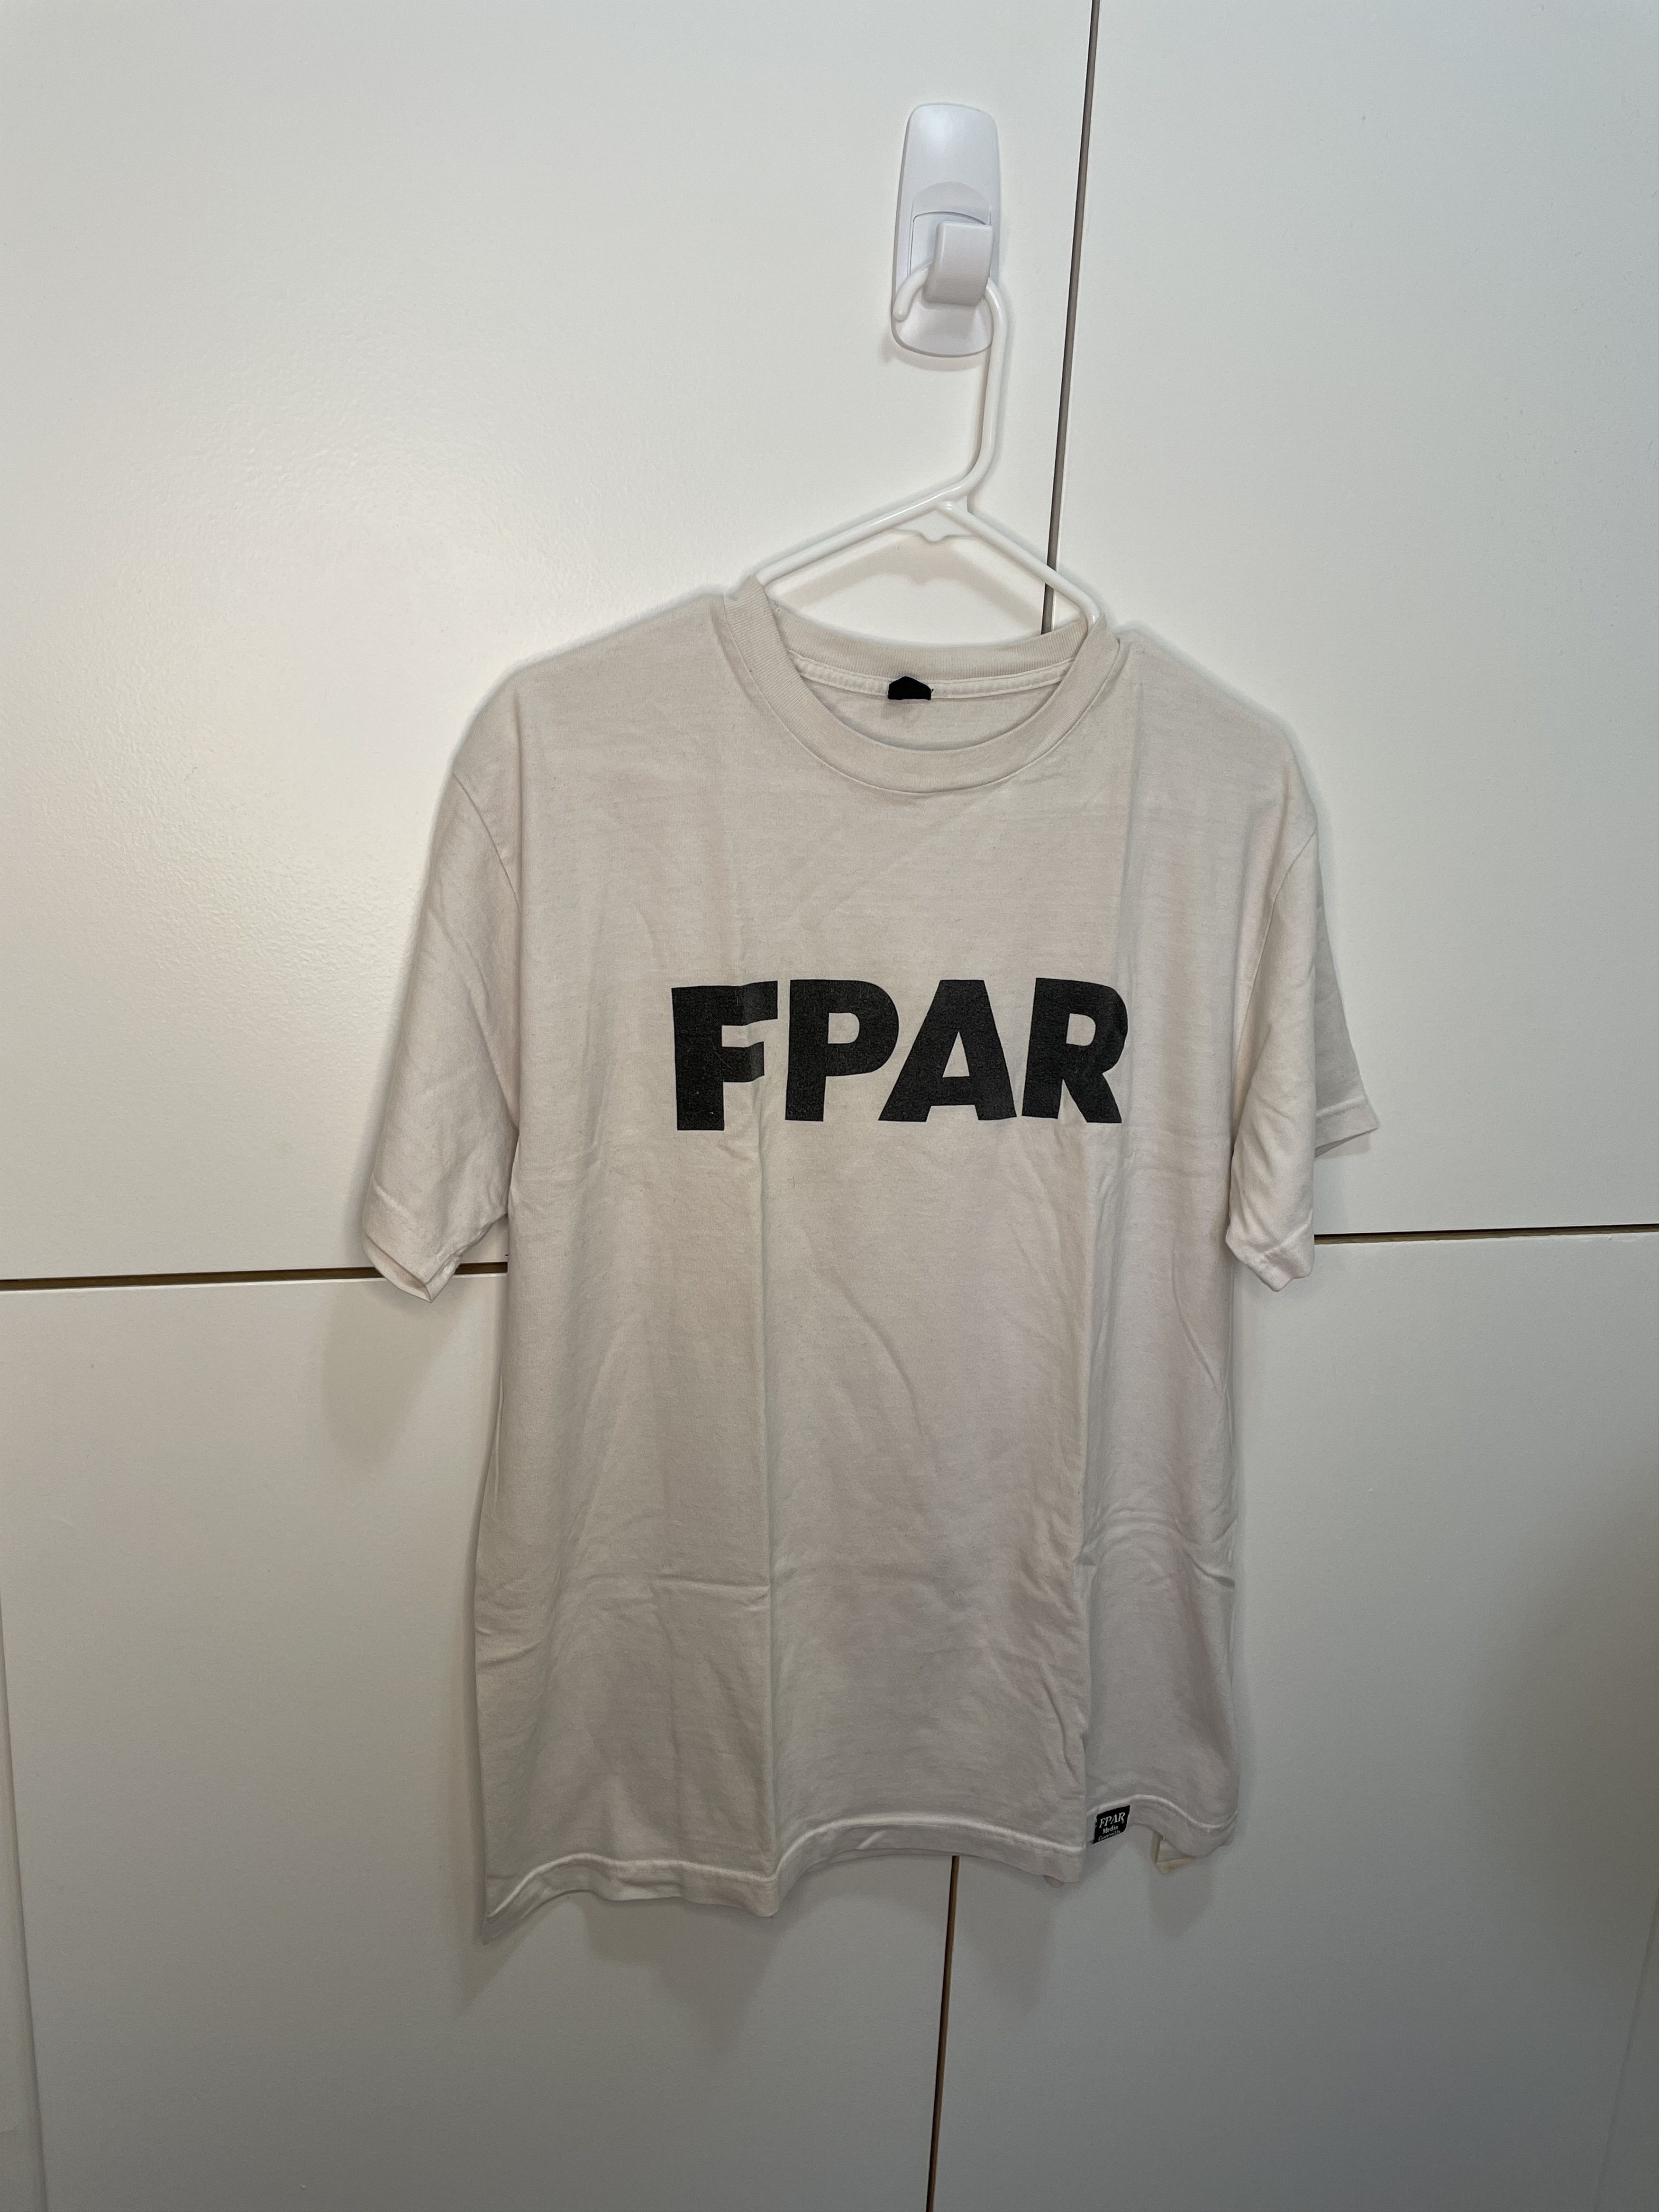 Forty Percent Against Rights (Fpar) FPAR OG Logo | Grailed